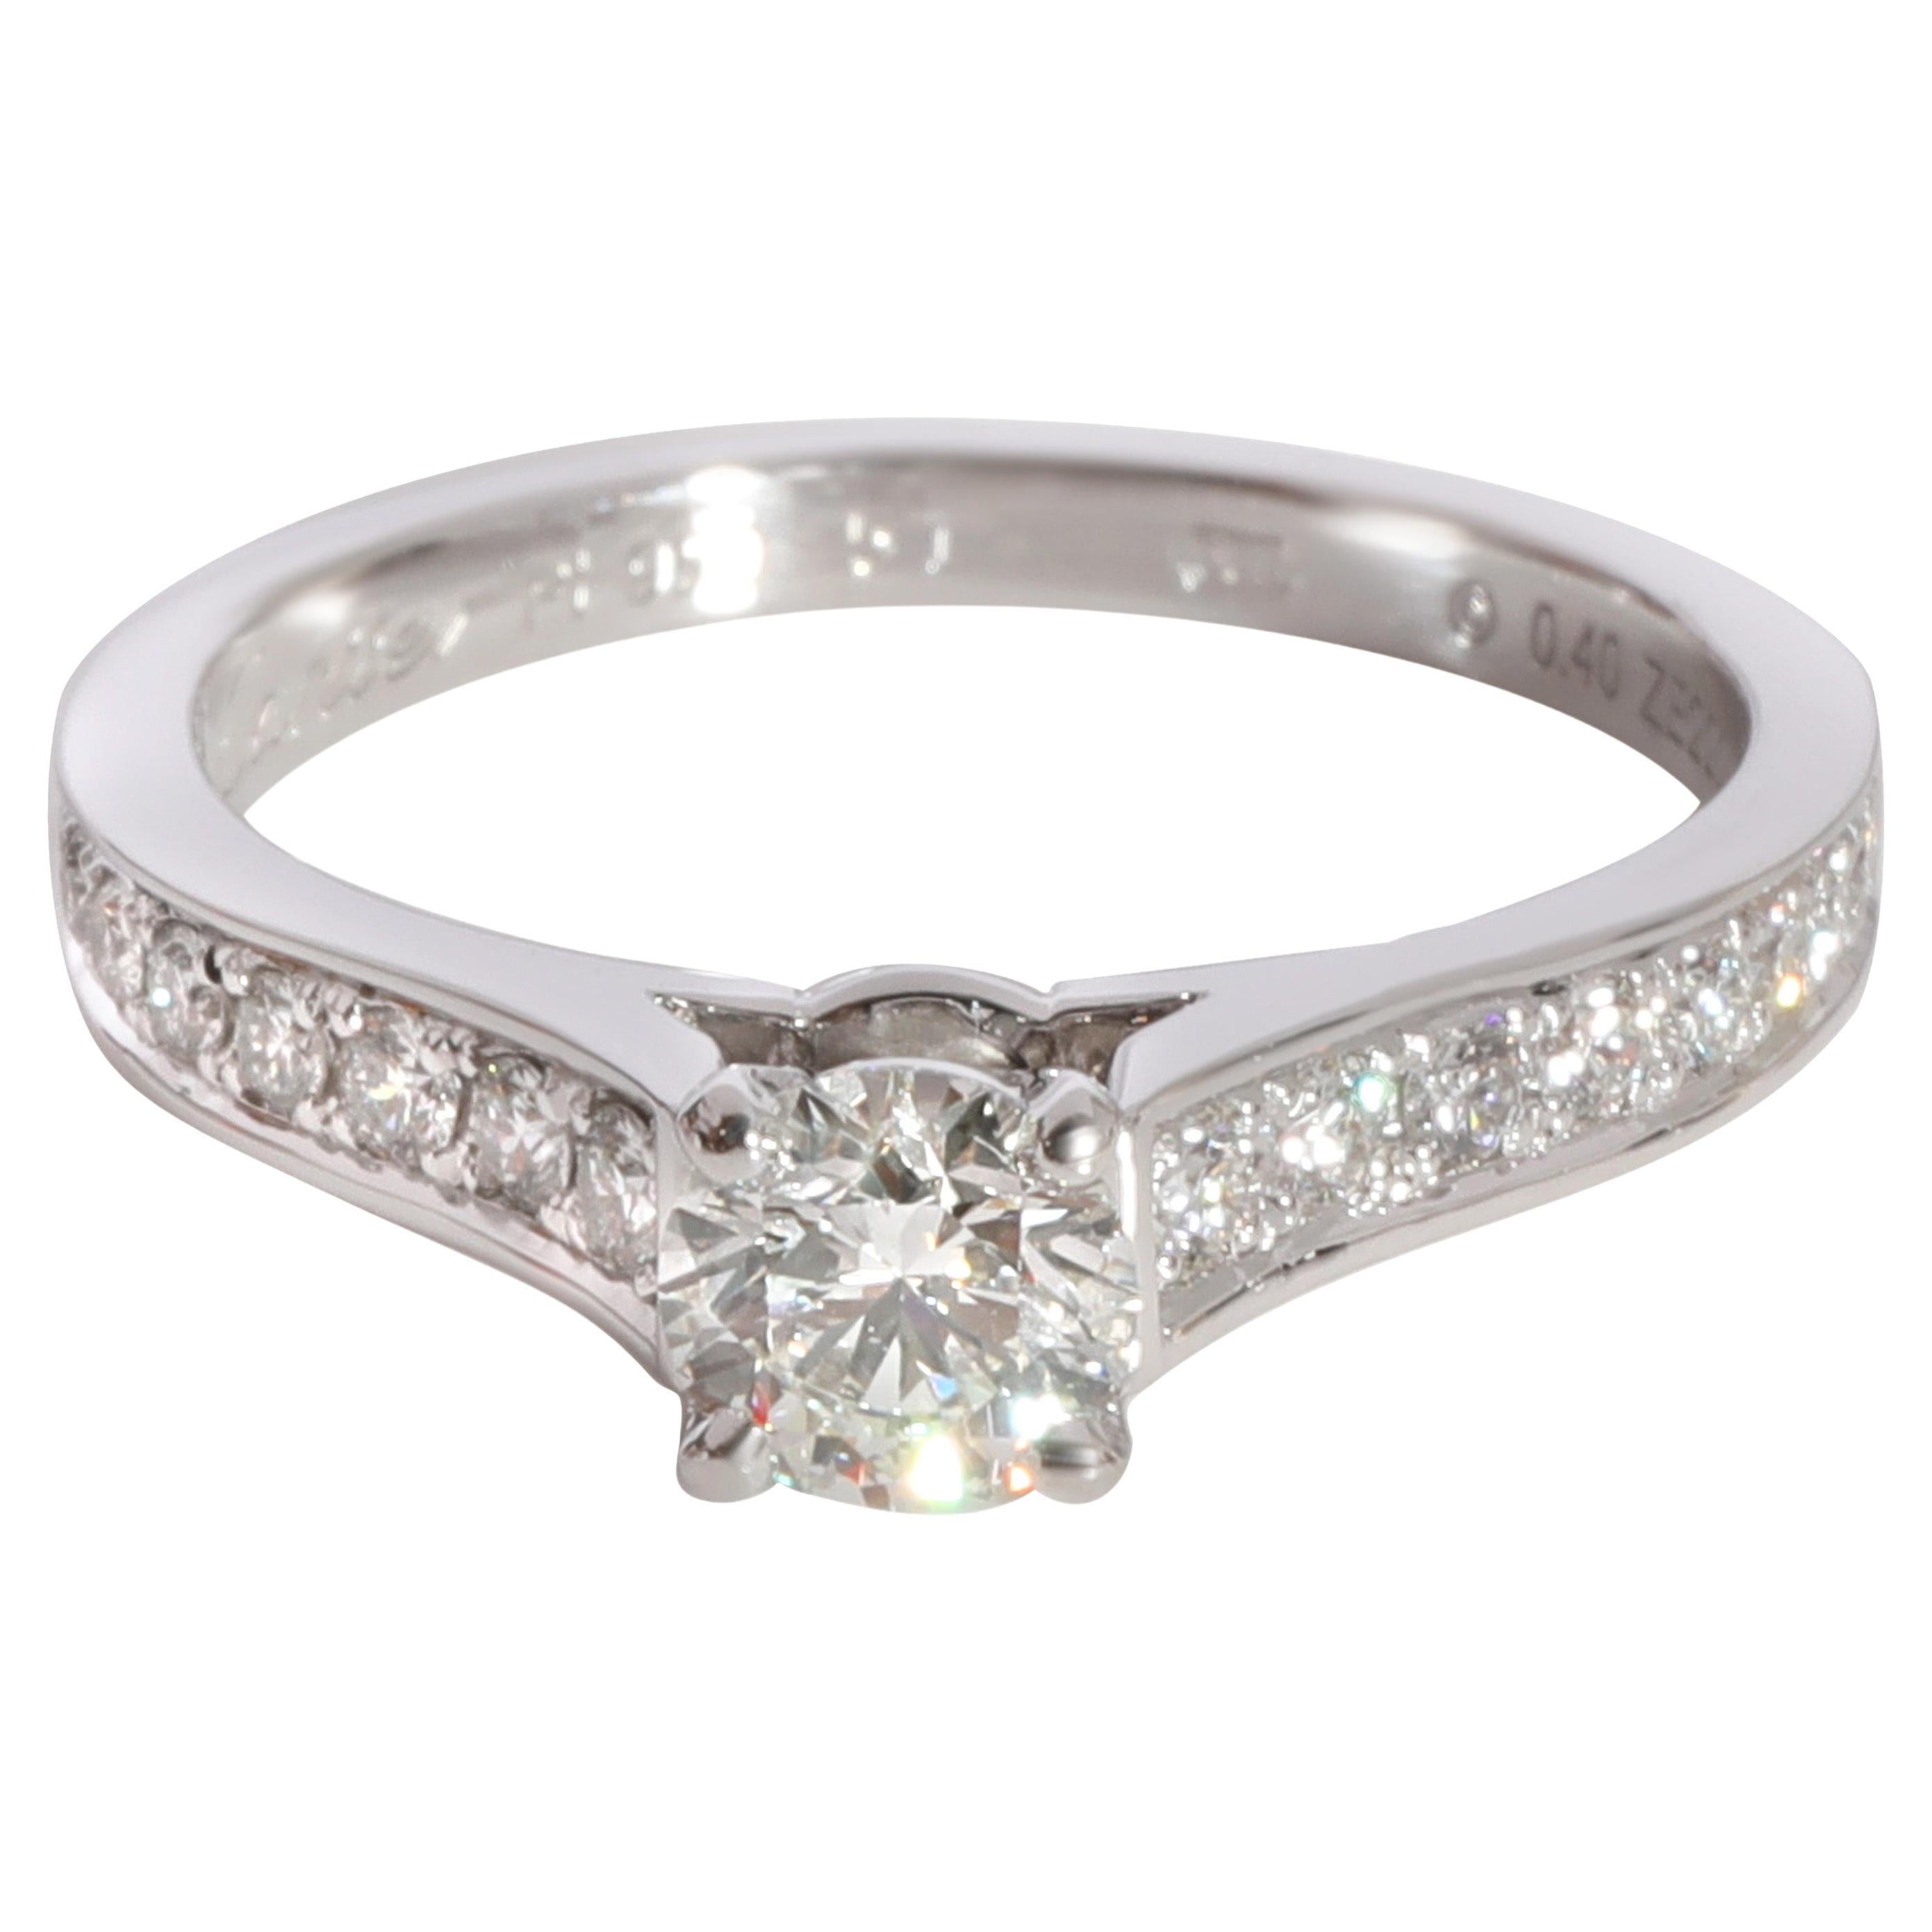 Cartier 1895 Diamond Engagement Ring in 950 Platinum G VS1 0.66 CTW